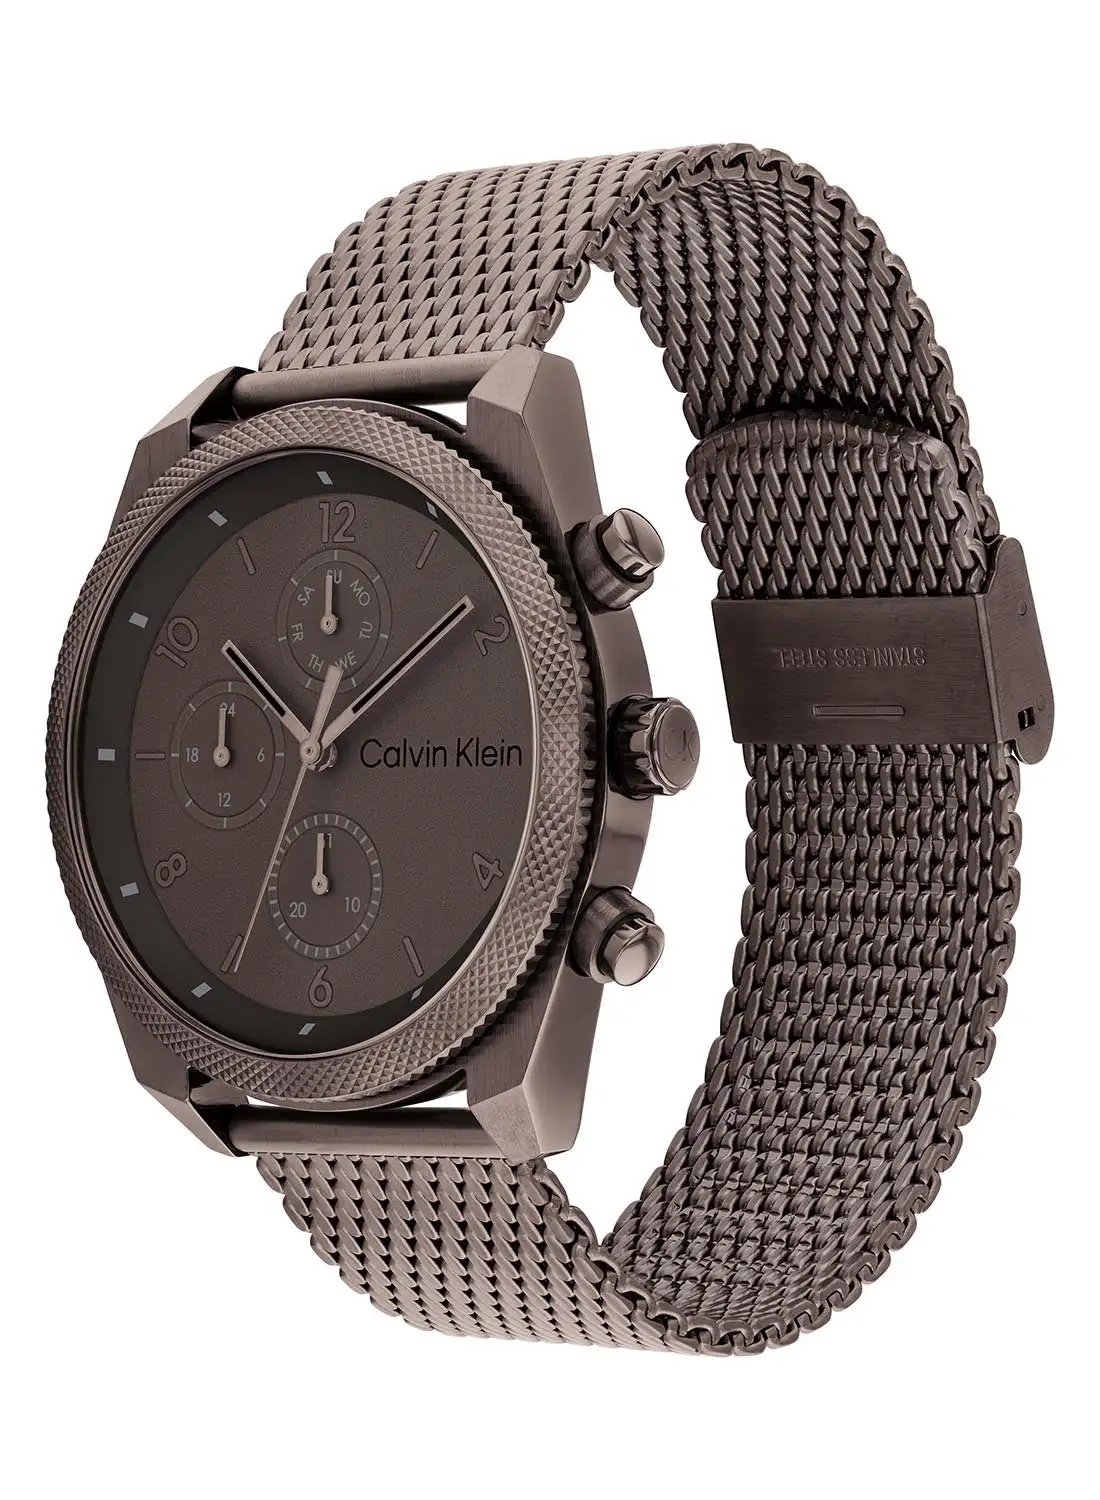 CALVIN KLEIN Men's Analog Round Shape Stainless Steel Wrist Watch 25200361 - 44 Mm